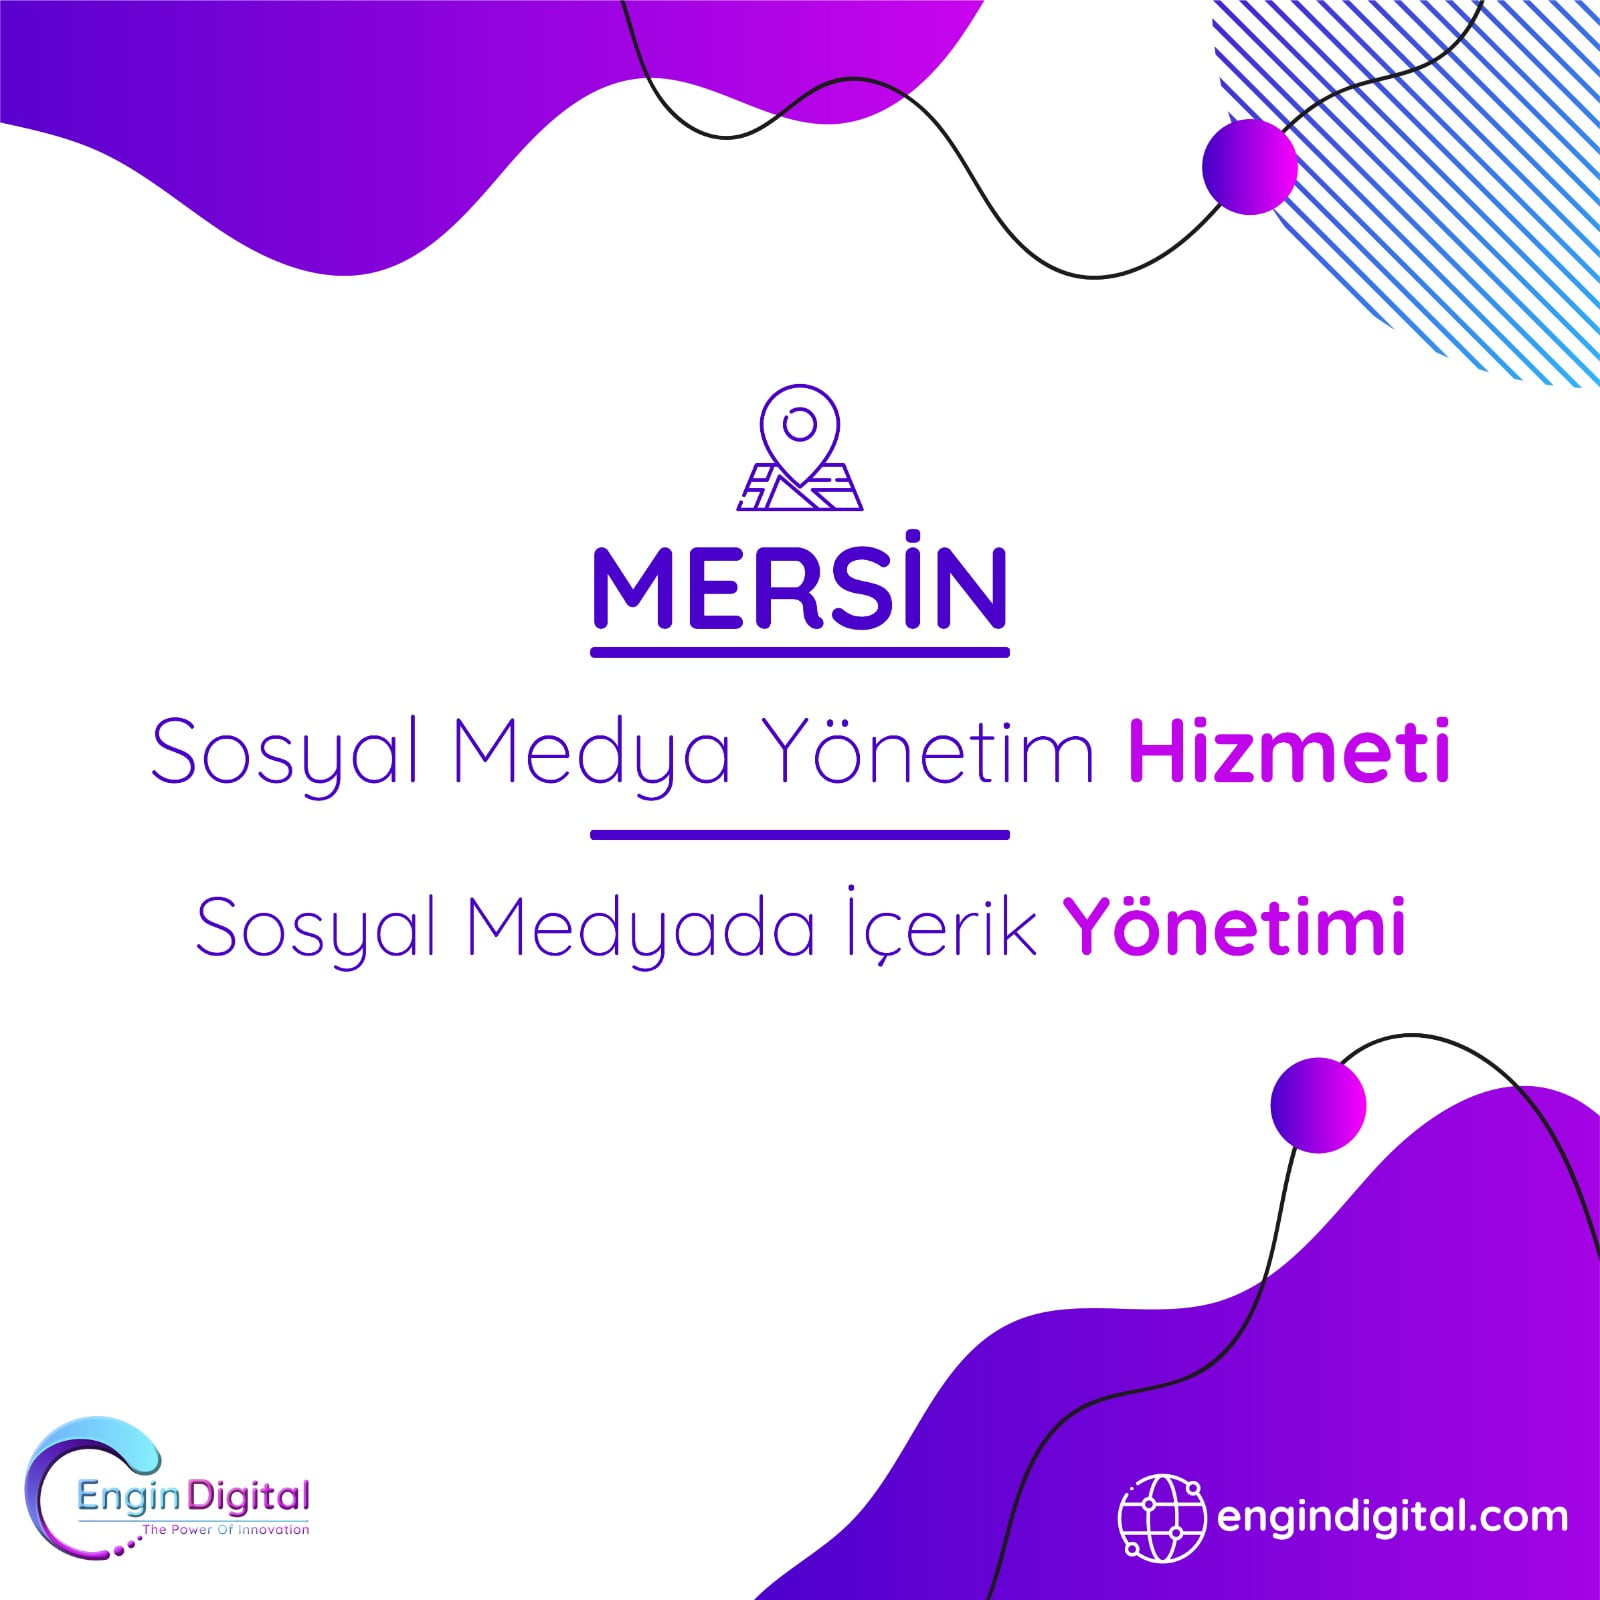 Mersin Sosyal Medya Yönetim Hizmeti Sosyal Medyada İçerik Yönetimi - Engin Digital